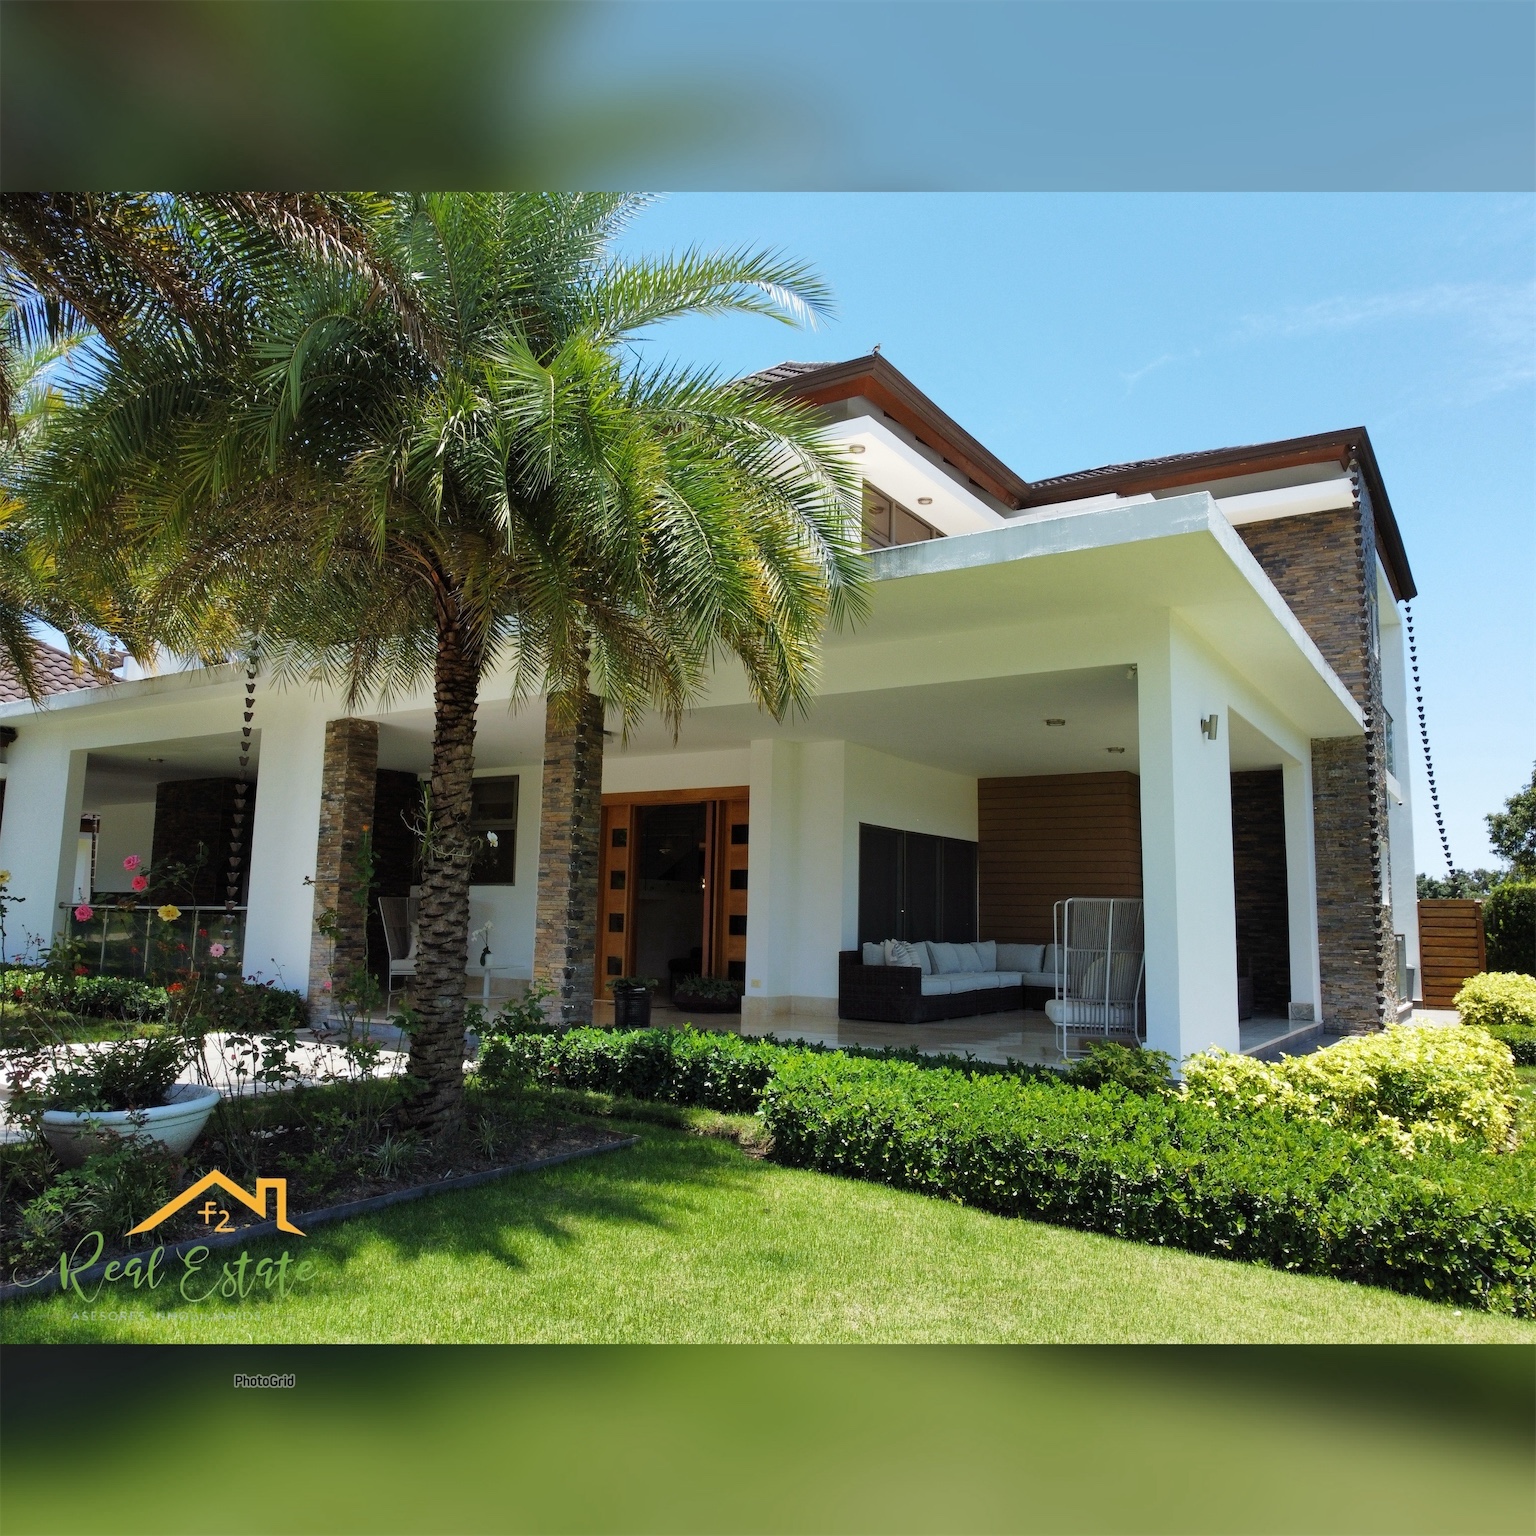 casas - Casa en Residencial Exclusivo Jarabacoa totalmente amueblada de primera calidad
 7